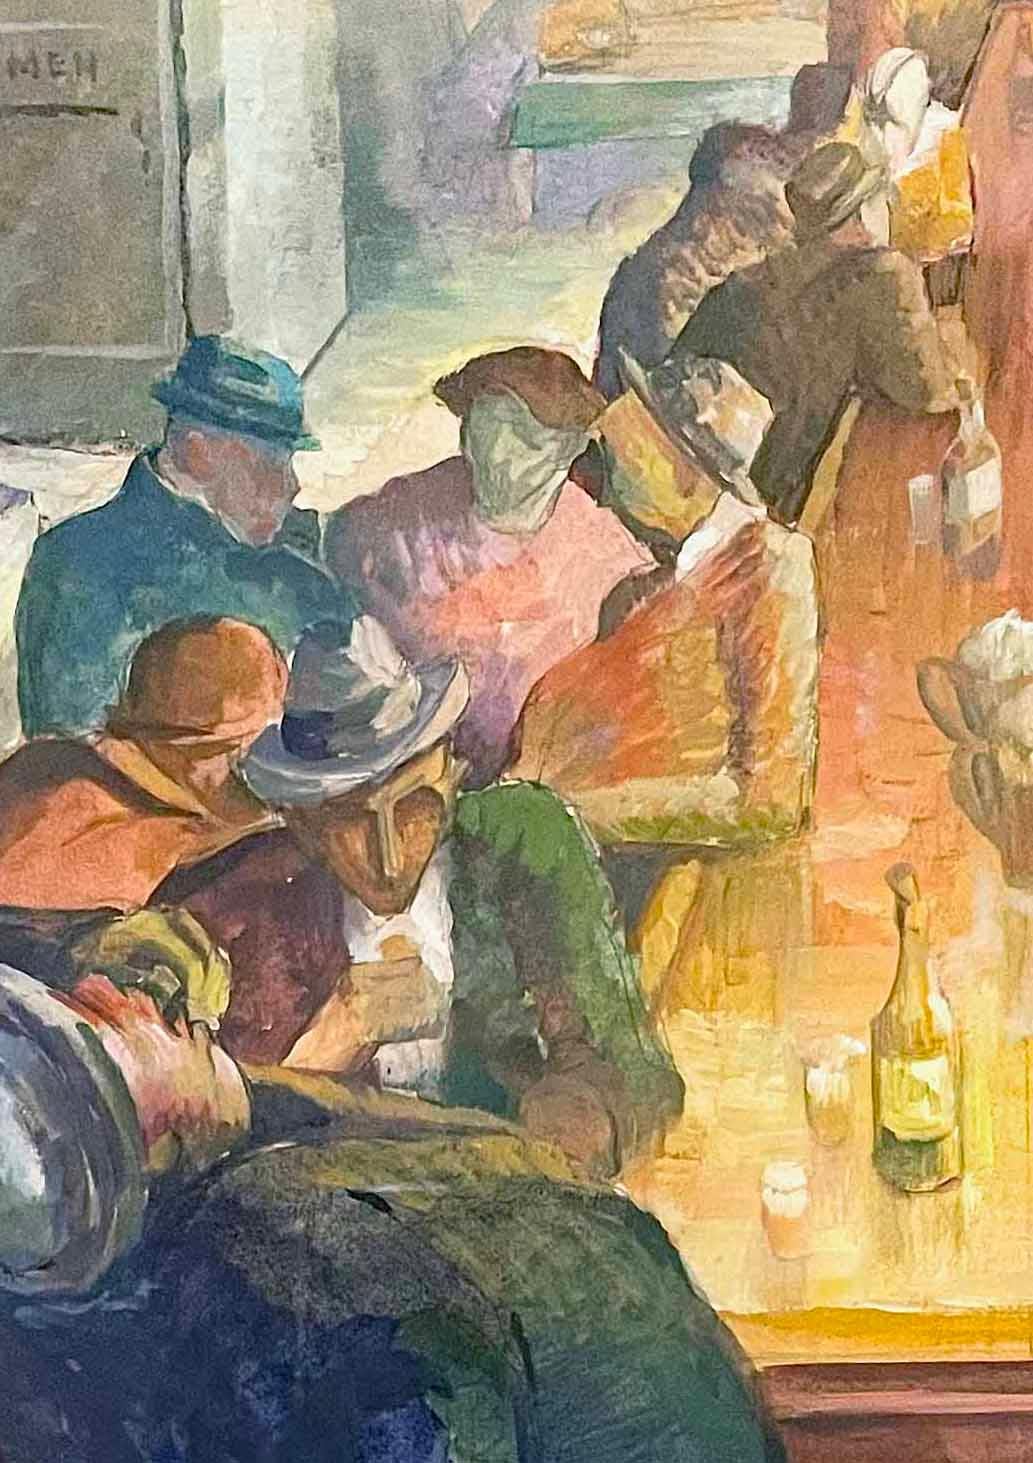 Diese typische Szene aus der Zeit der Depression zeigt eine Reihe von Männern in einer Taverne, die sich an den Rand der Bar lehnen und Schnaps schlürfen.  Die Anwesenden in der Bar scheinen gesellig zu sein und sich zu unterhalten, und der große